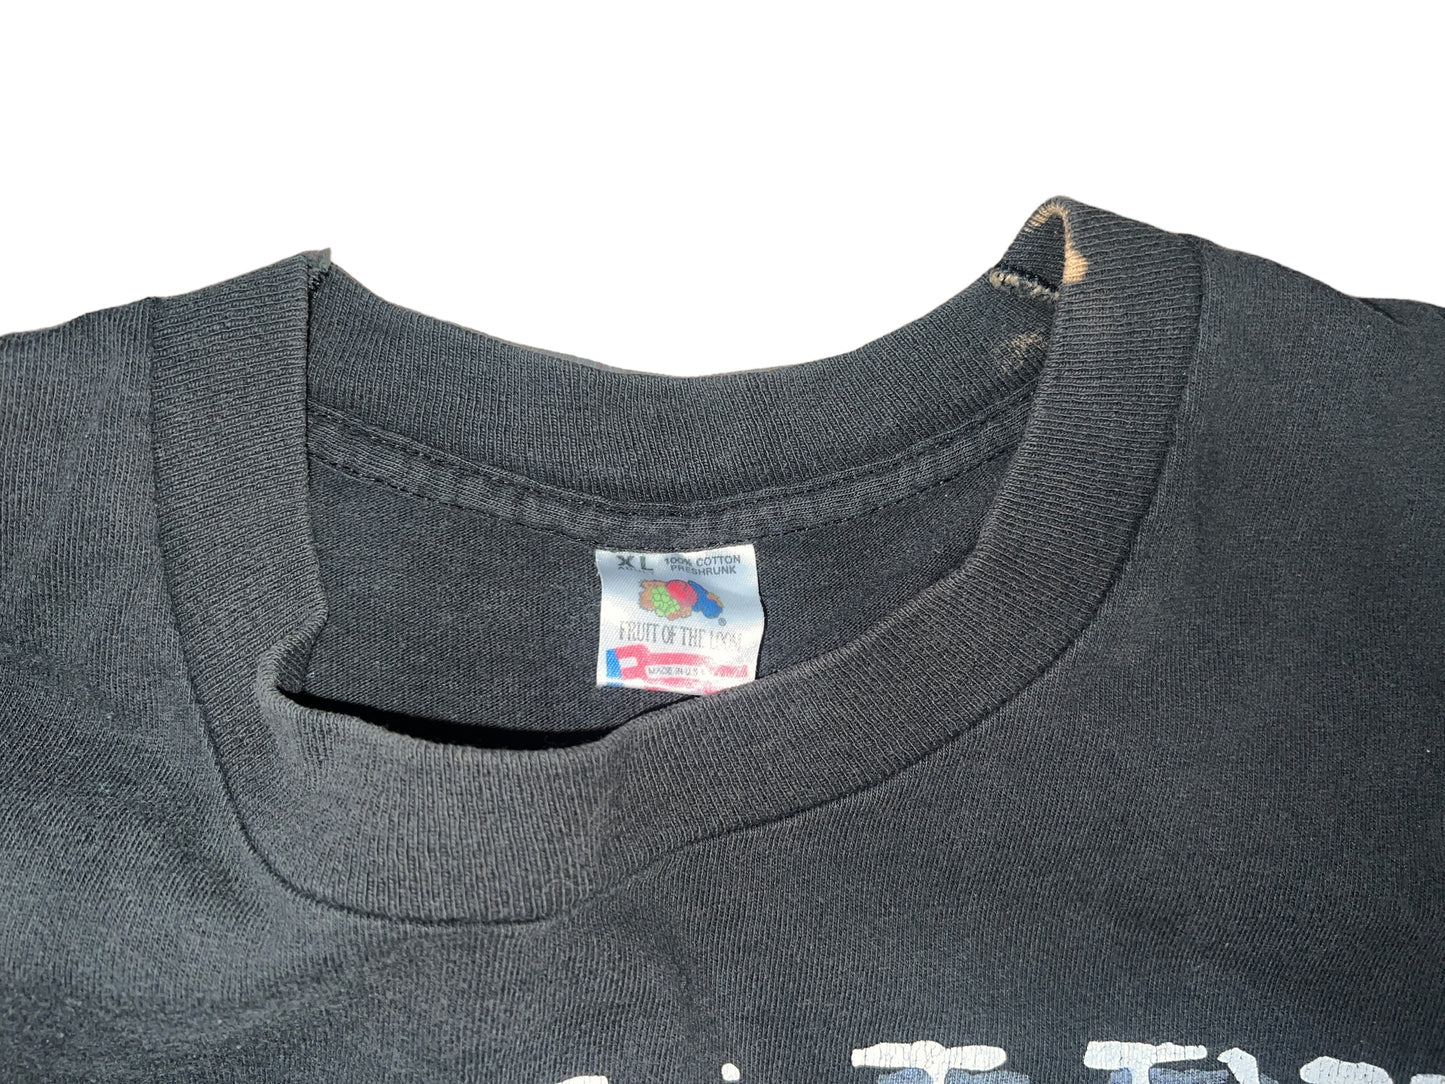 Vintage 1993 Van Halen T-Shirt